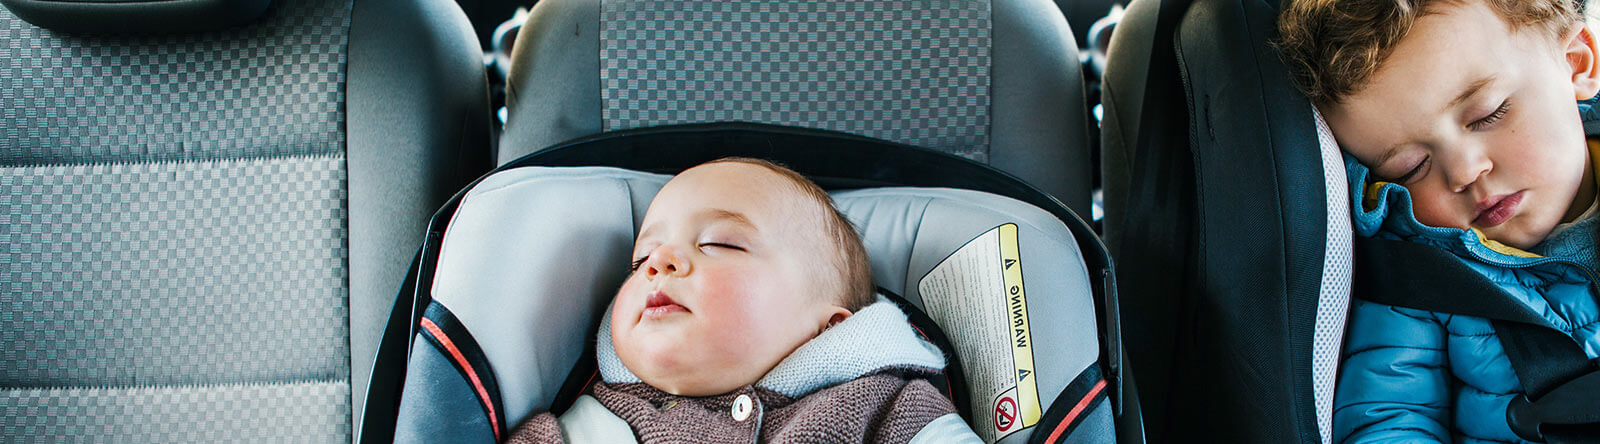 Segurança e transporte do bebé – Cuidar no primeiro ano de vida